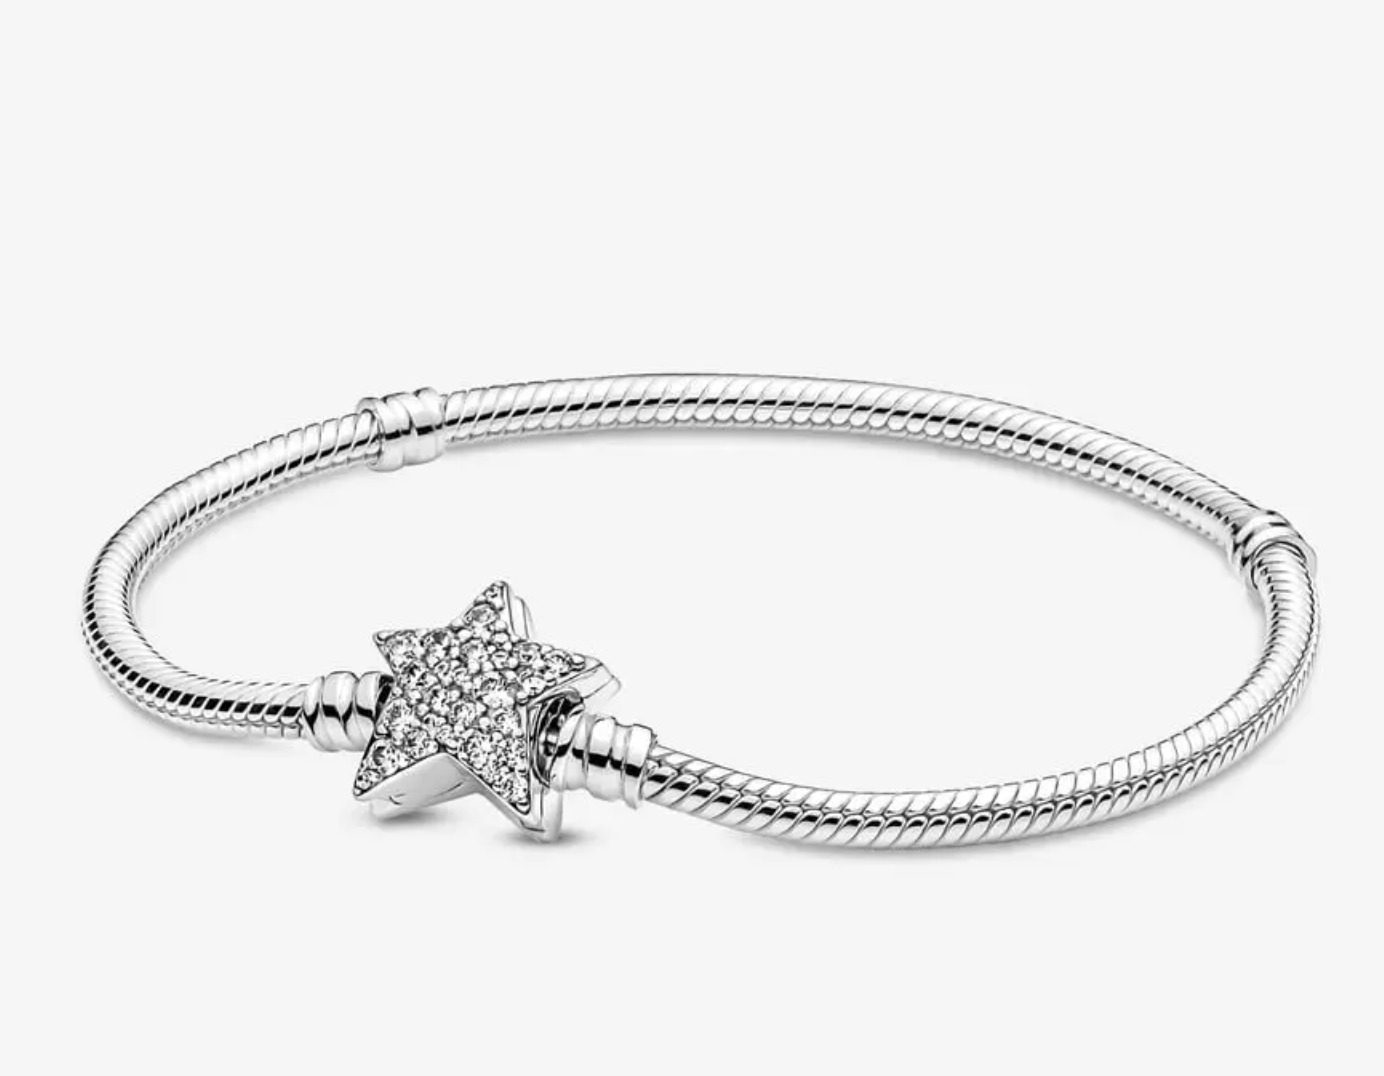 Ajoutez de l'éclat à votre tenue avec le bracelet chaîne serpent Pandora Moments avec fermoir étoile asymétrique. Fabriqué à la main en argent sterling, le fermoir étoile du bracelet est recouvert de pierres de zircone cubique transparentes étincelantes des deux côtés.